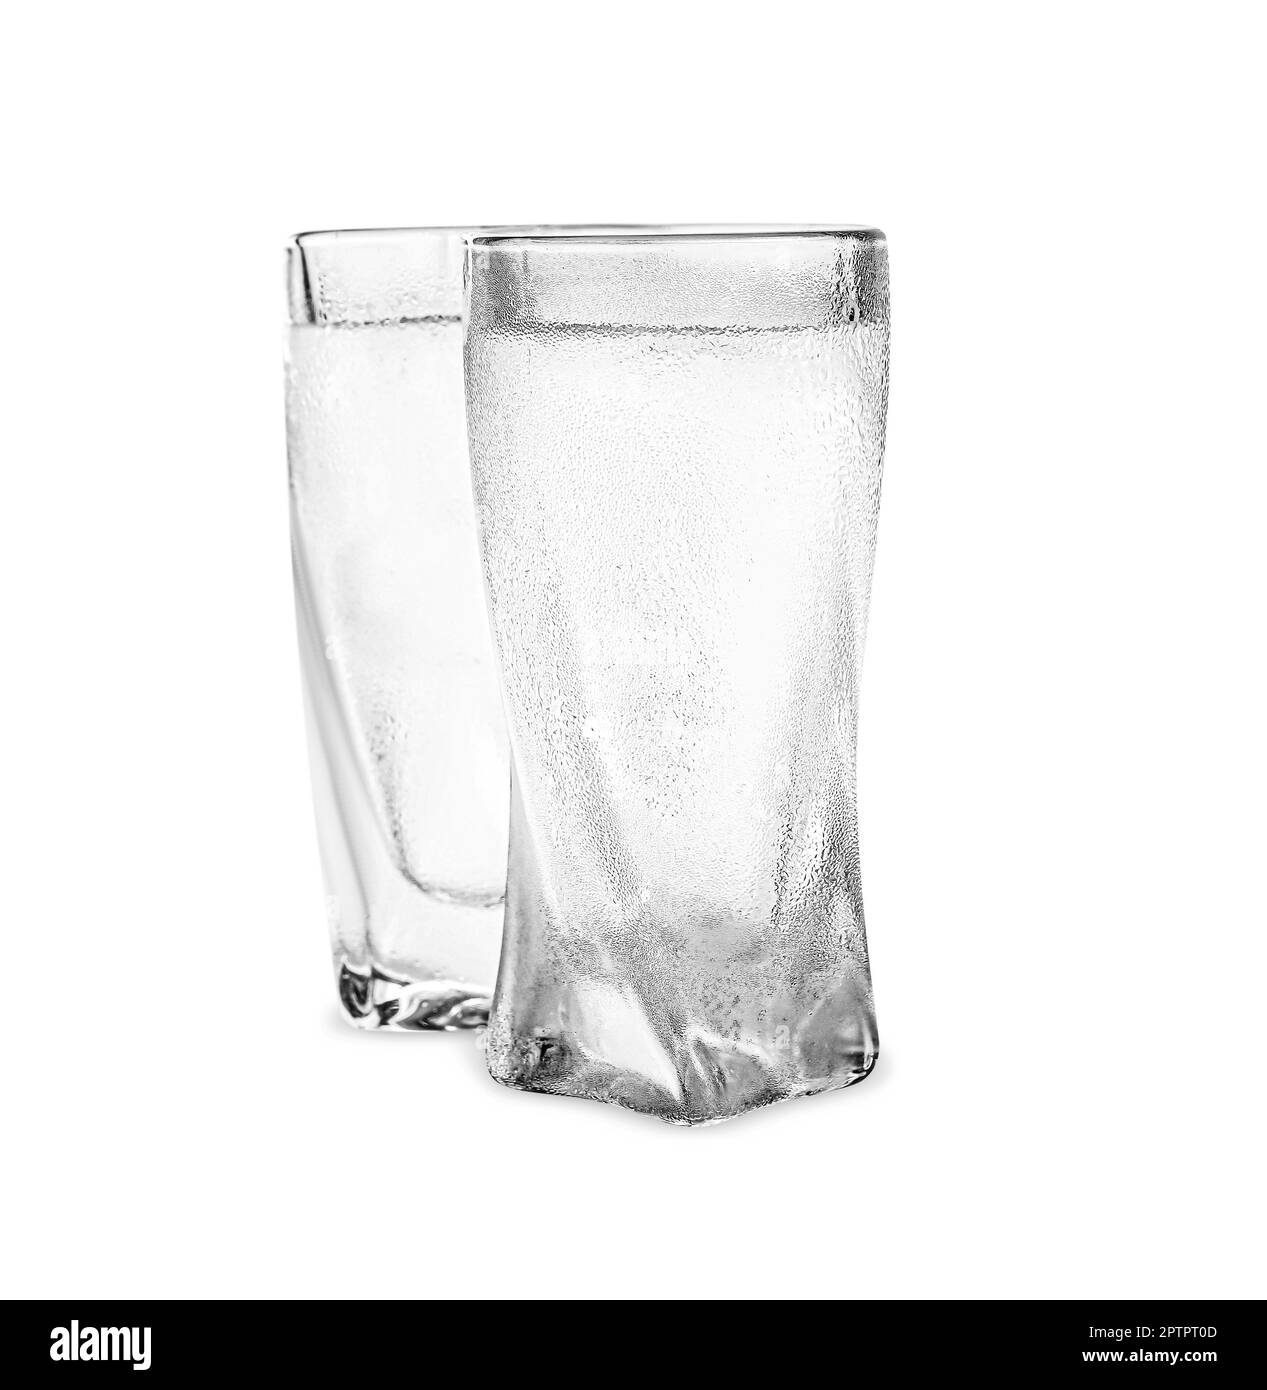 Vodka in shot glasses on white background Stock Photo